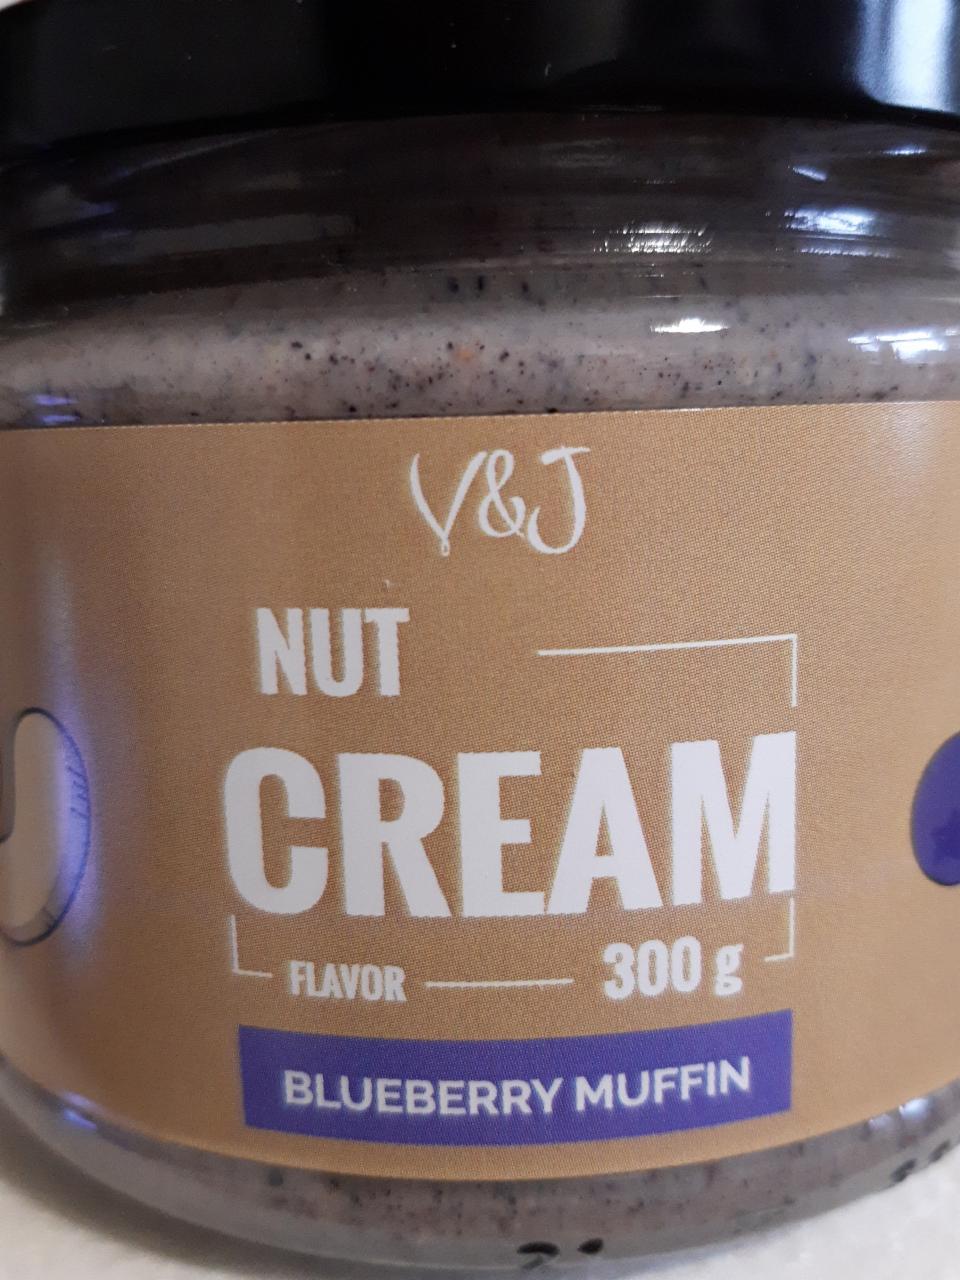 Fotografie - Nut Cream Blueberry Muffin V&J